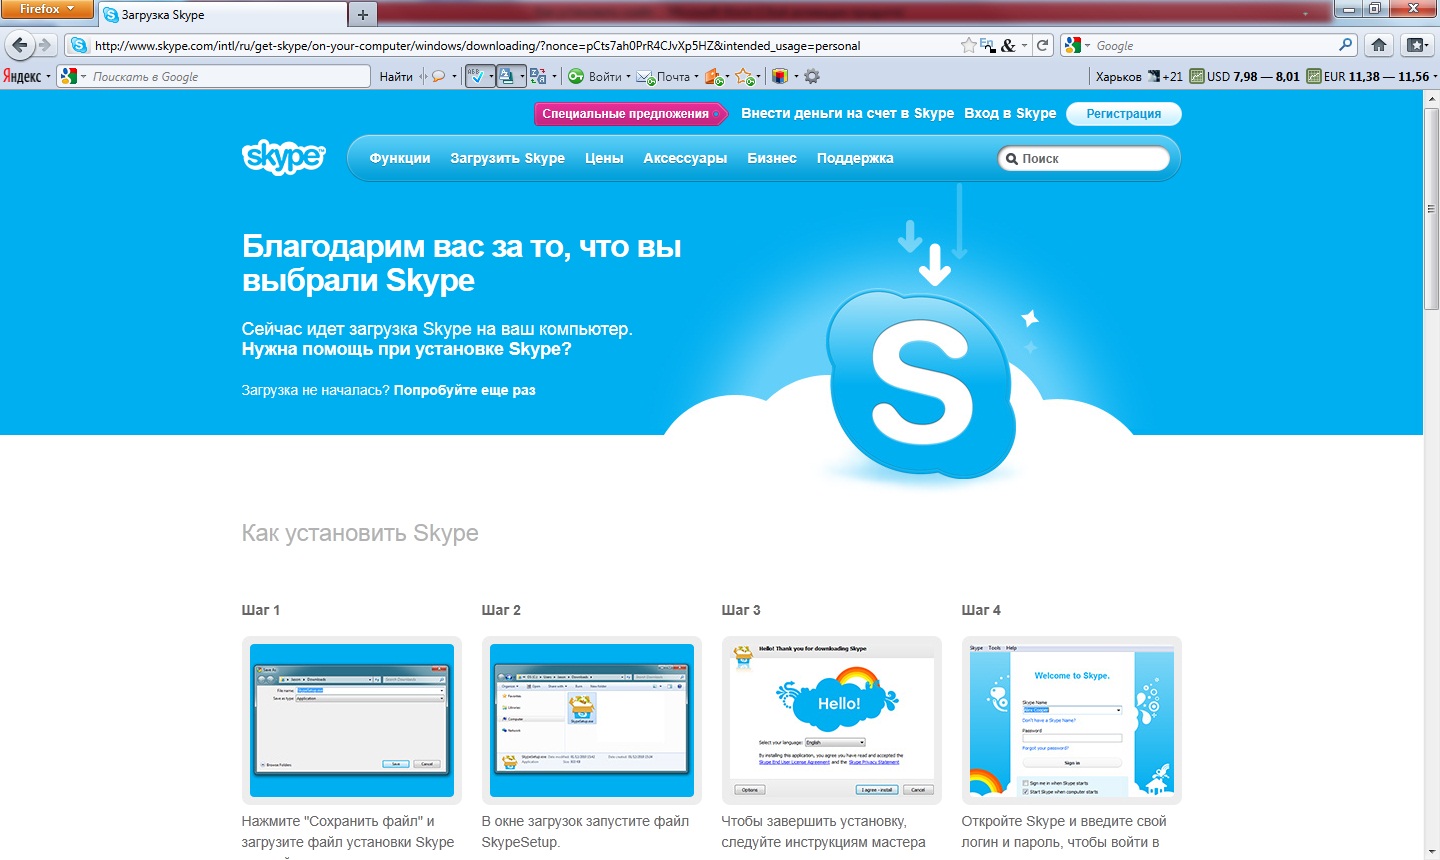 Установить бесплатную версию скайп. Установка скайпа. Как установить Skype. Загрузить скайп. Как установить скайп на компьютер.